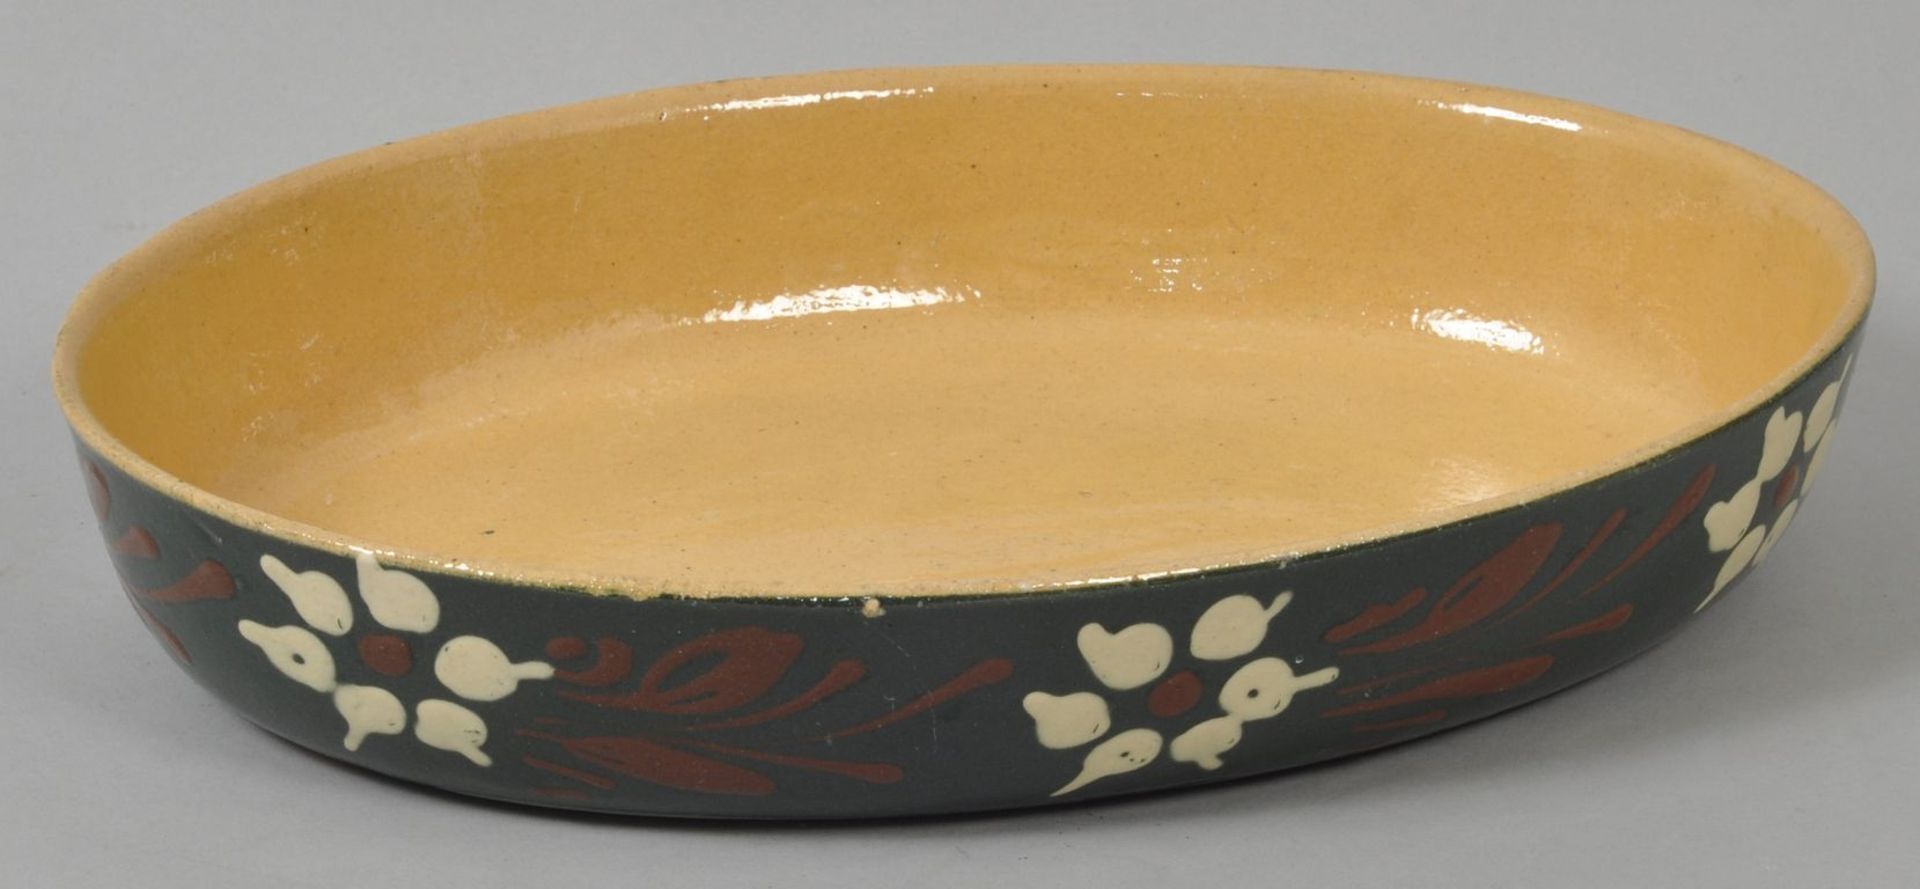 Ovale Schale, Elsass, 1. H. 20. Jh.Keramik/Irdengut, auf der Außenwandung florales Malhorndekor